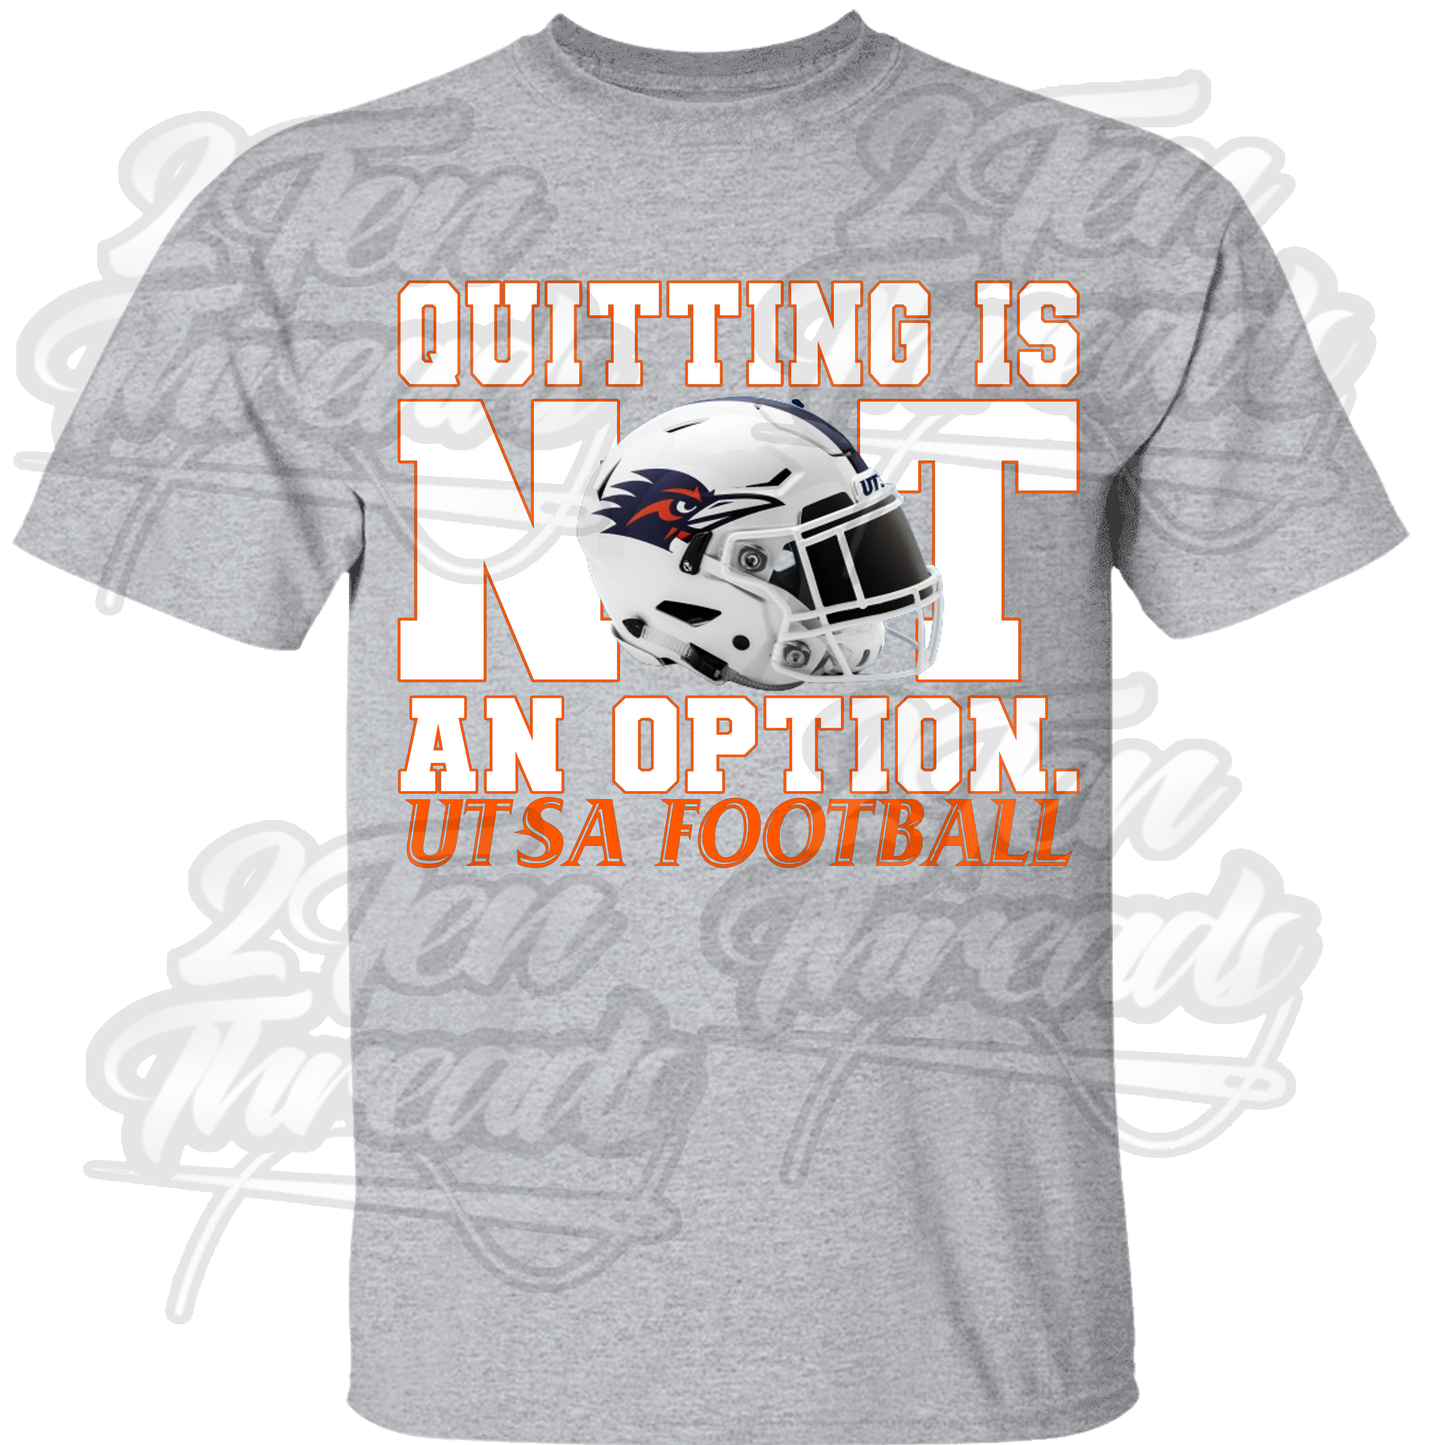 Not an Option UTSA Shirt